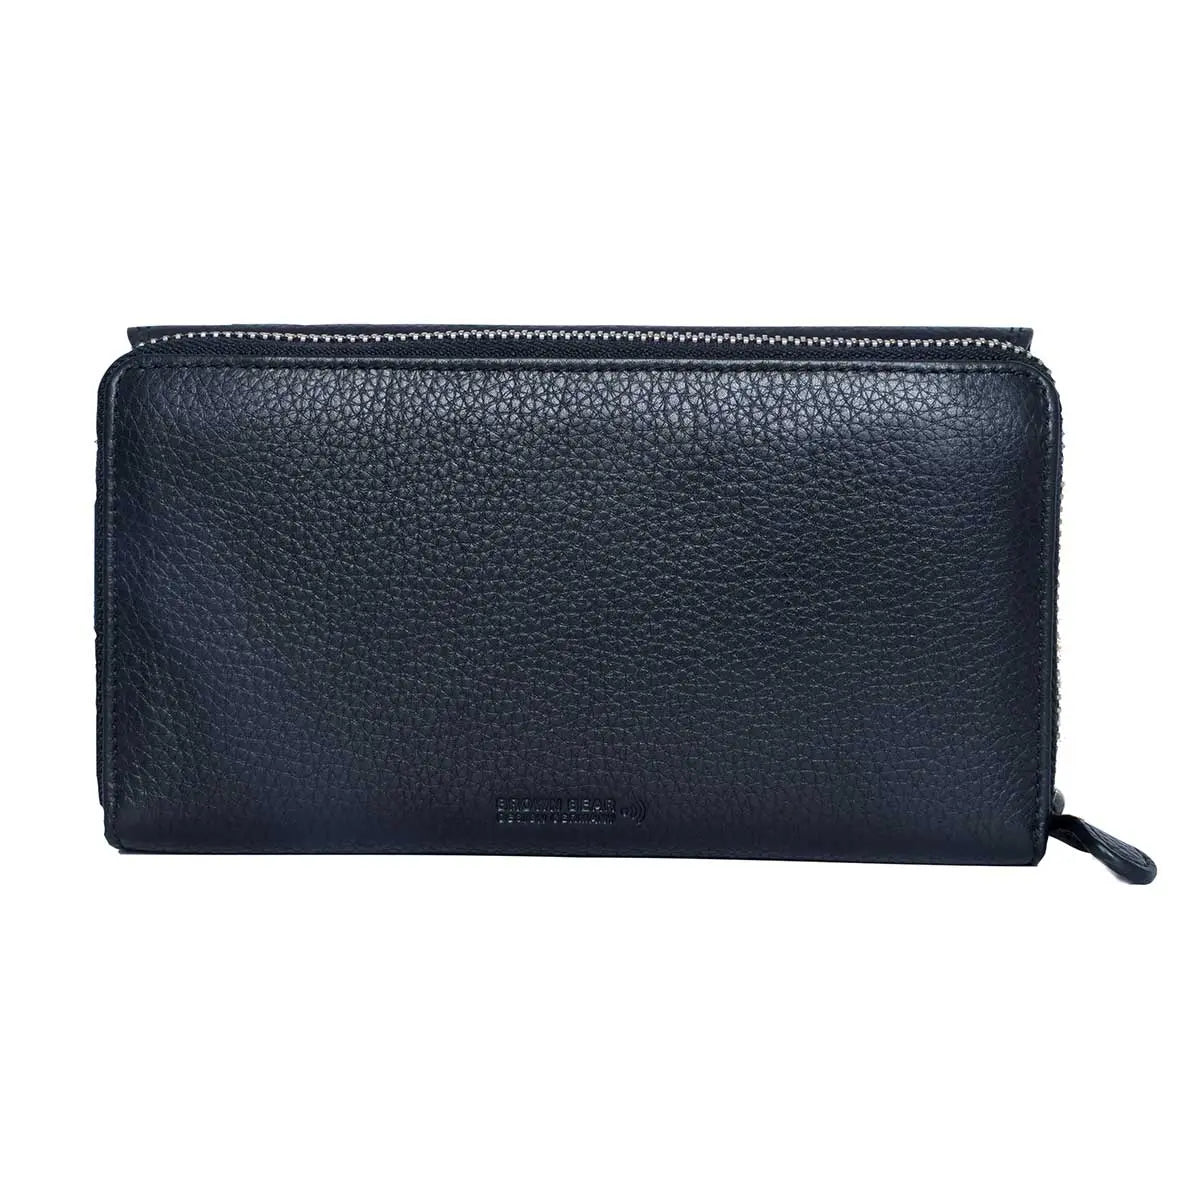 Zip Around Ladies Wallet with External pocket in Genuine Leather - Brown Bear